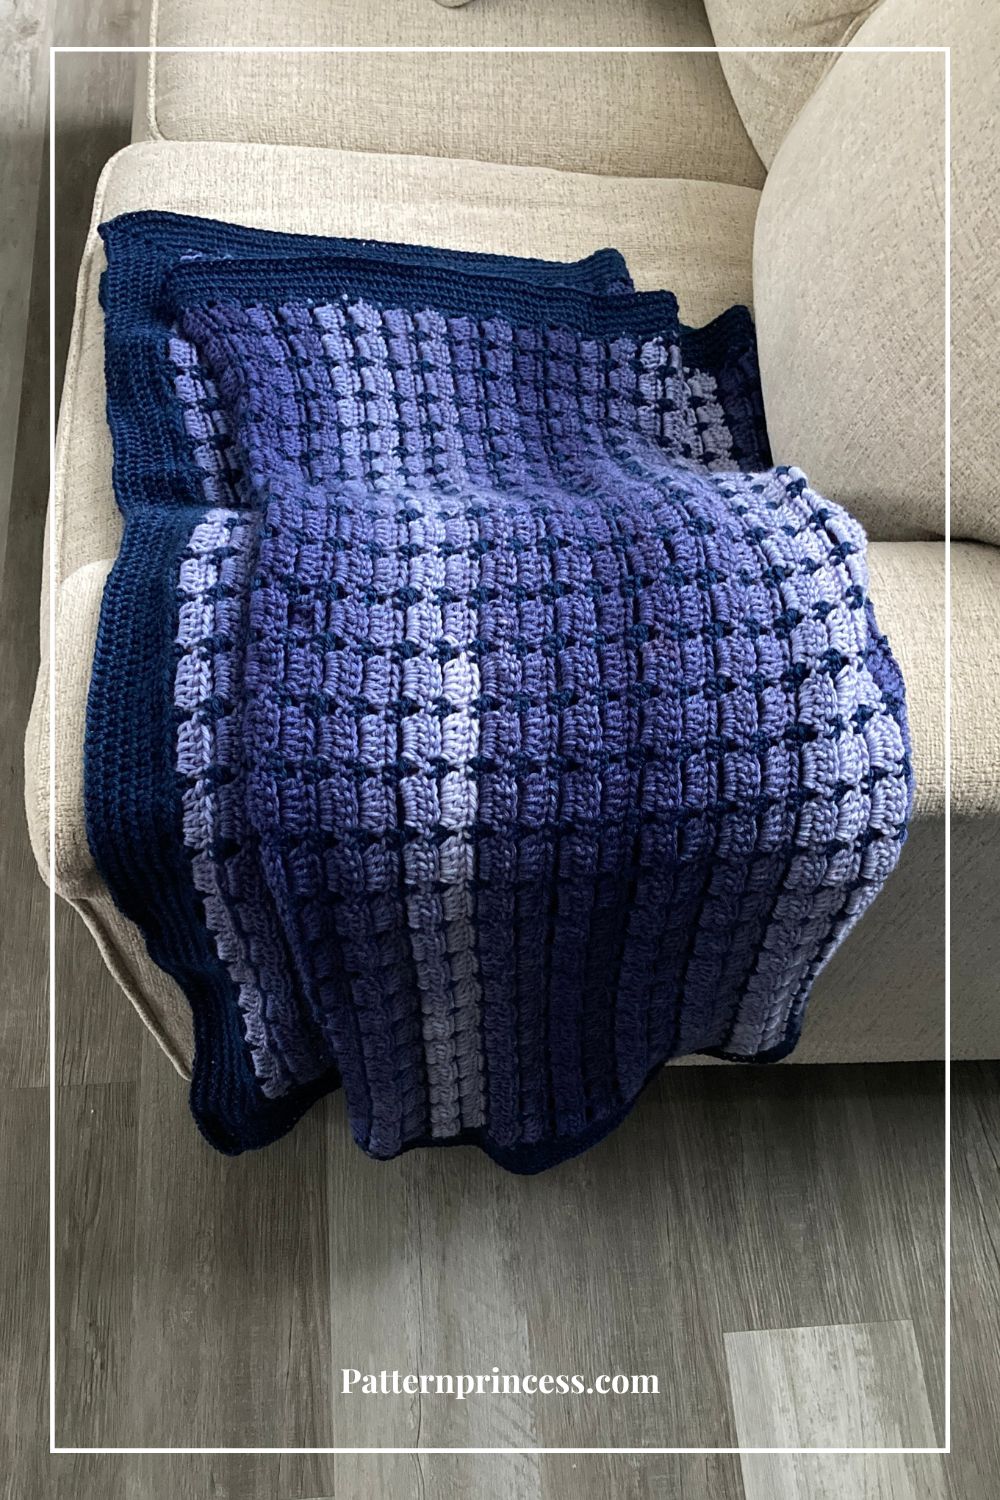 Boxed Block Stitch Blanket Folded on Sofa